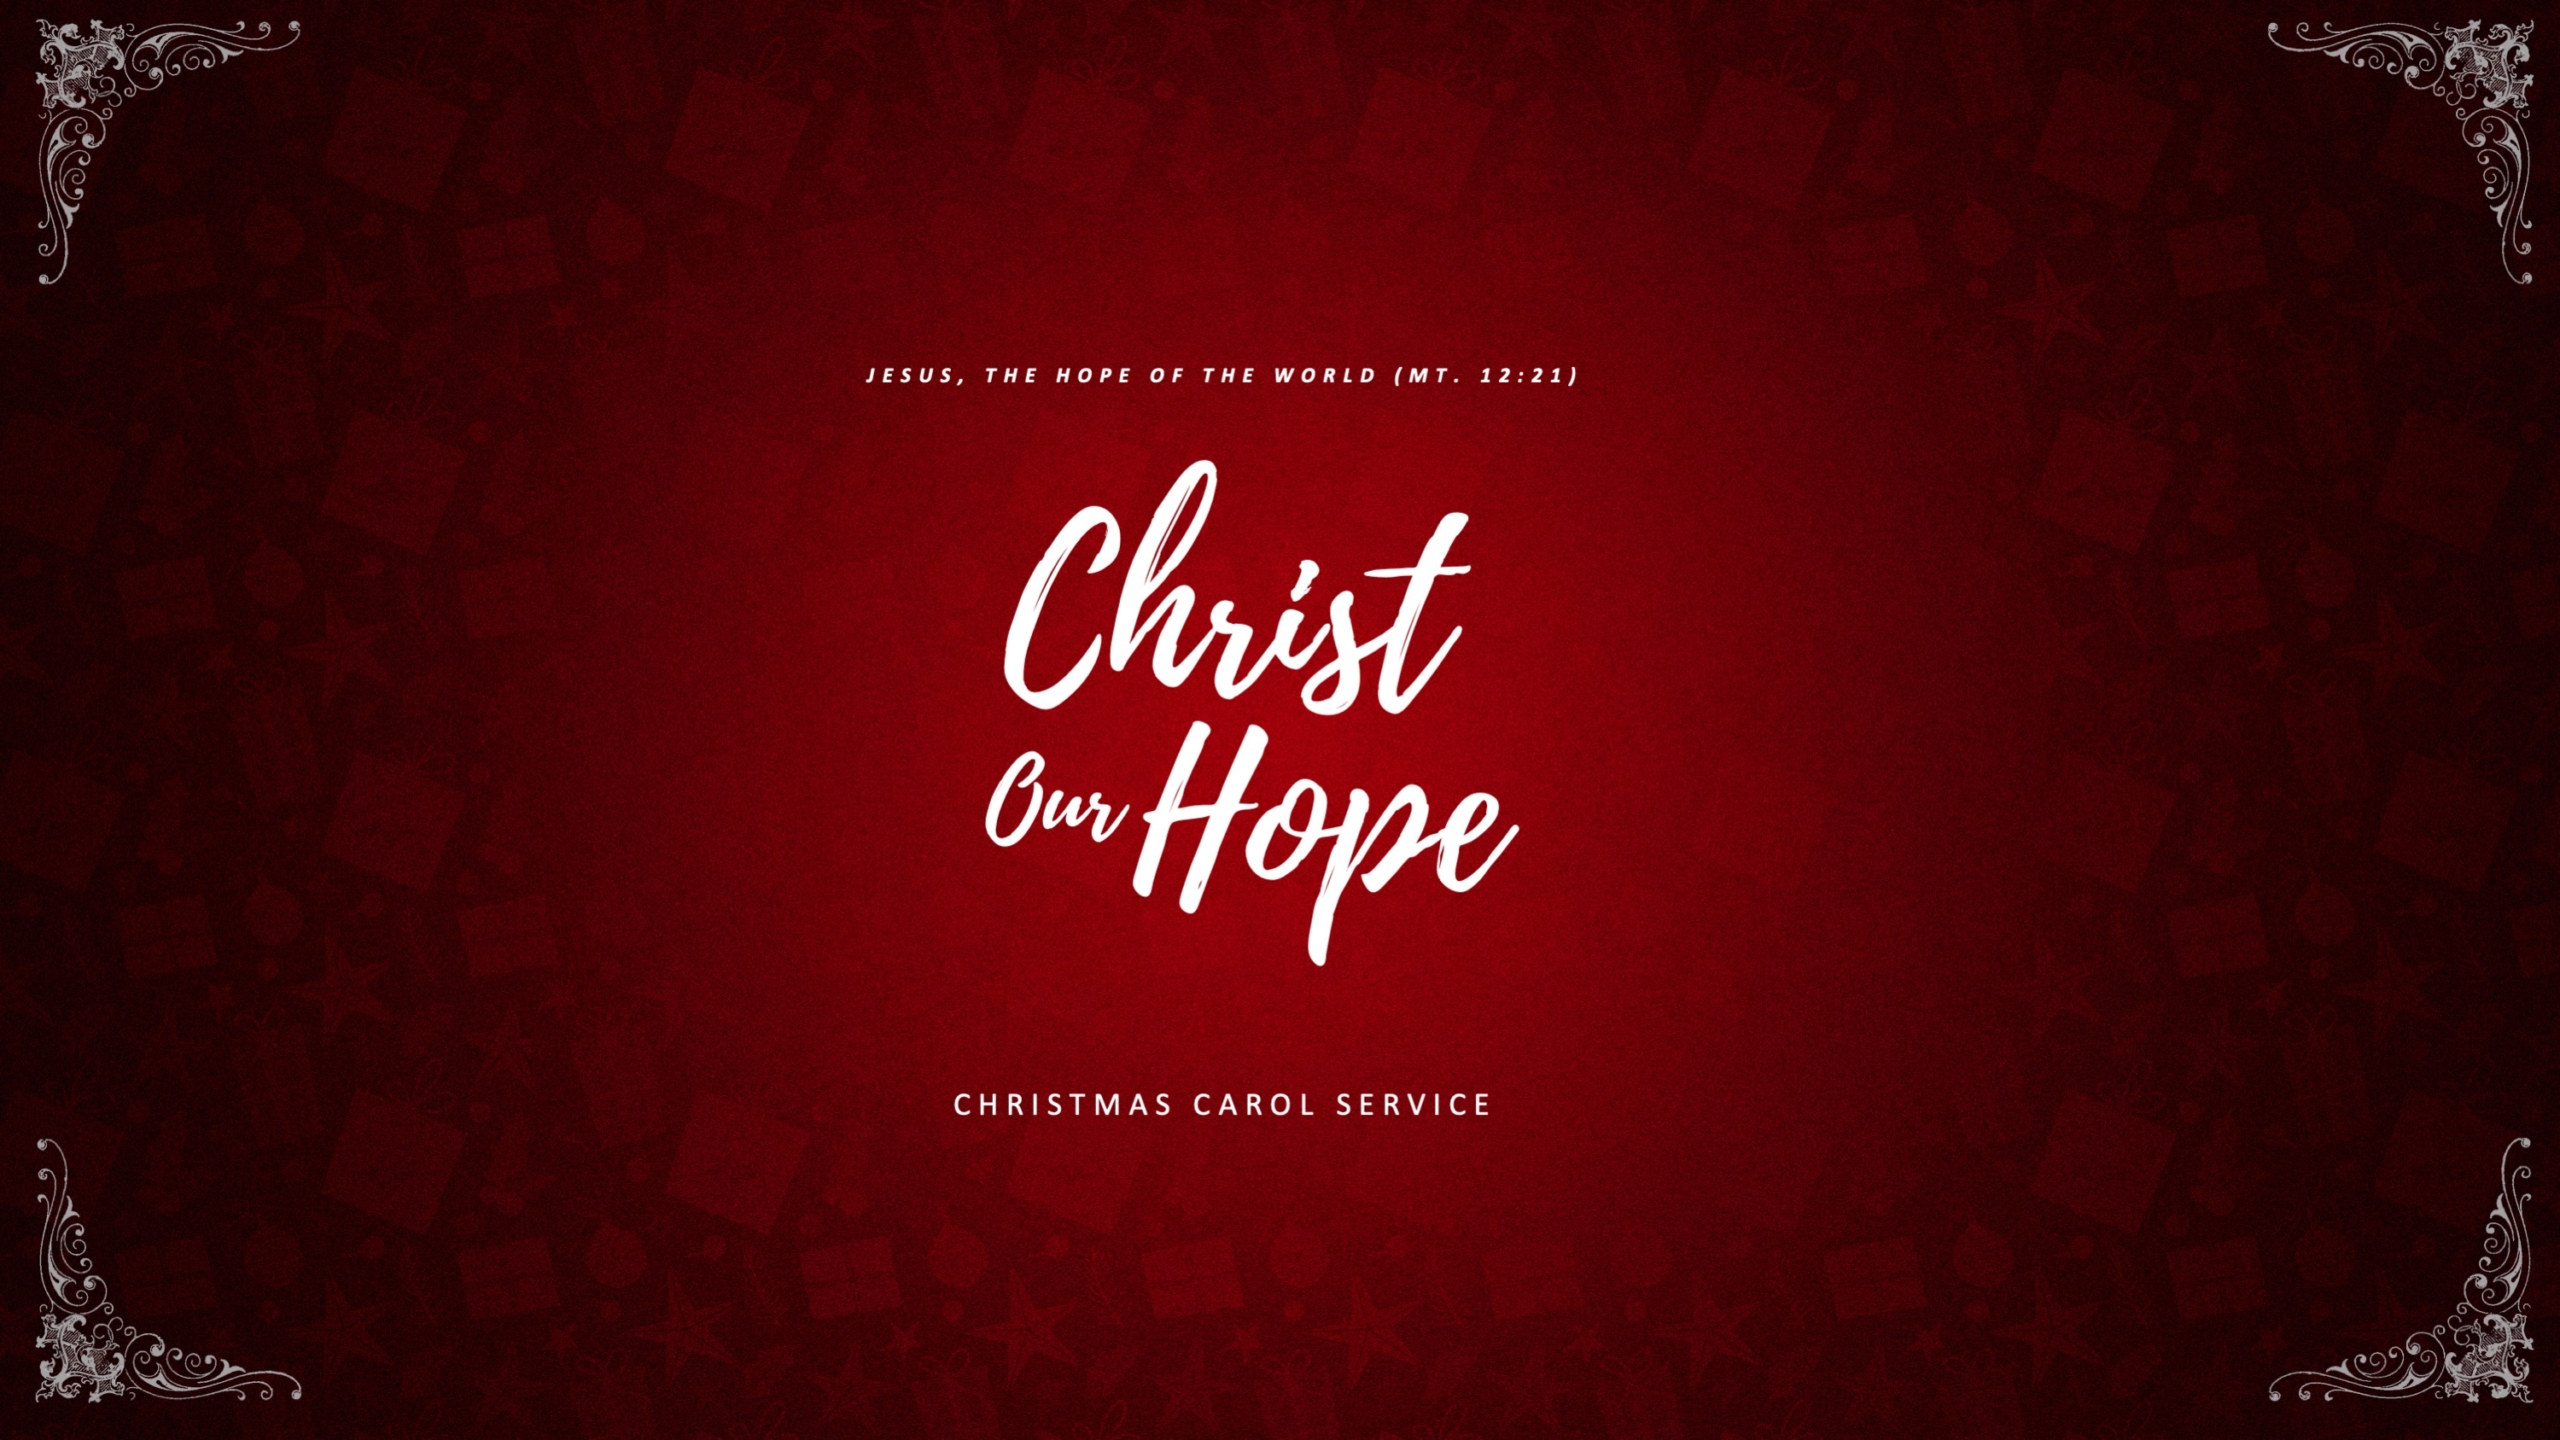 Christmas Carol Service (21 Dec 2019)